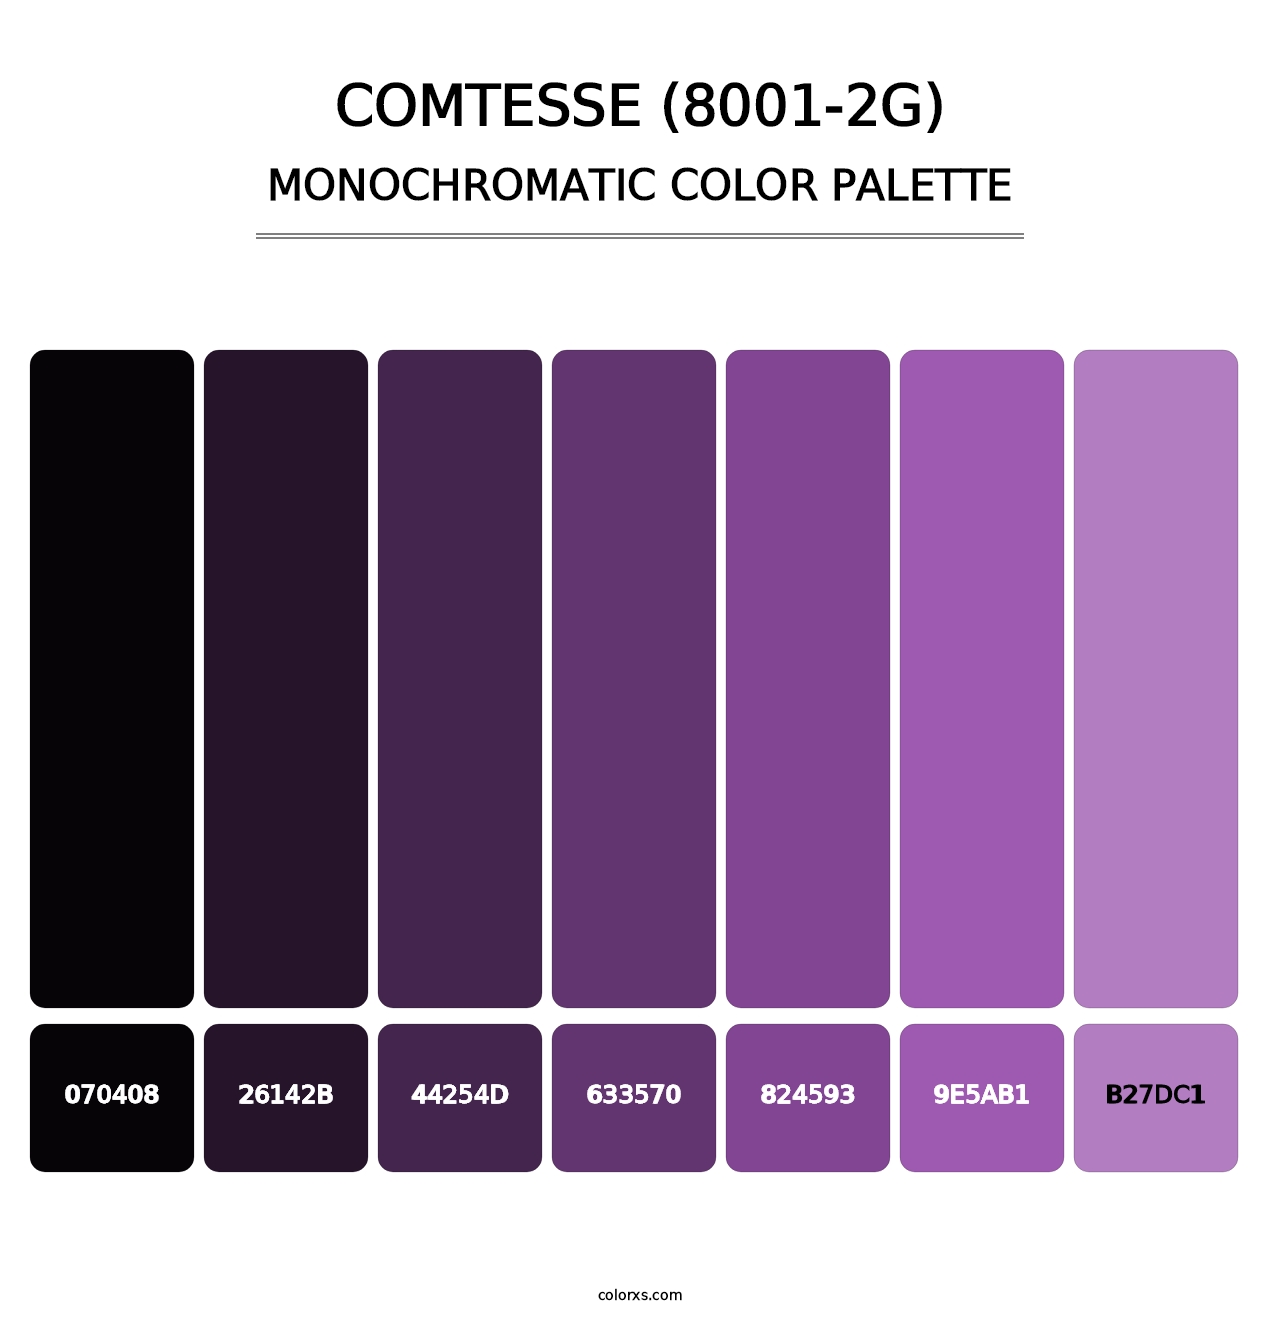 Comtesse (8001-2G) - Monochromatic Color Palette